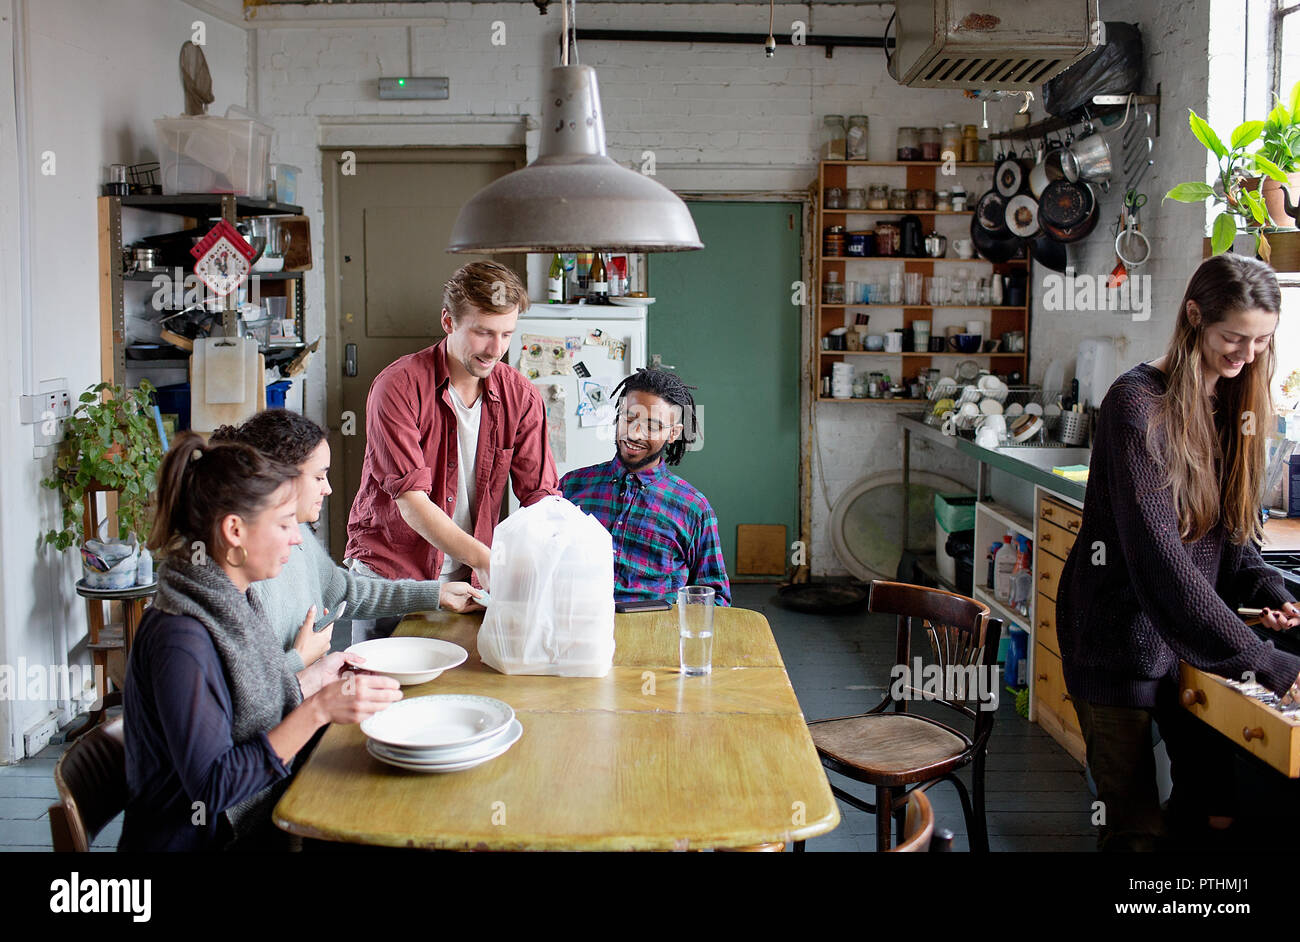 Junge Erwachsene Mitbewohner Freunde Vorbereitung Takeout Essen in der Küche zu essen Stockfoto